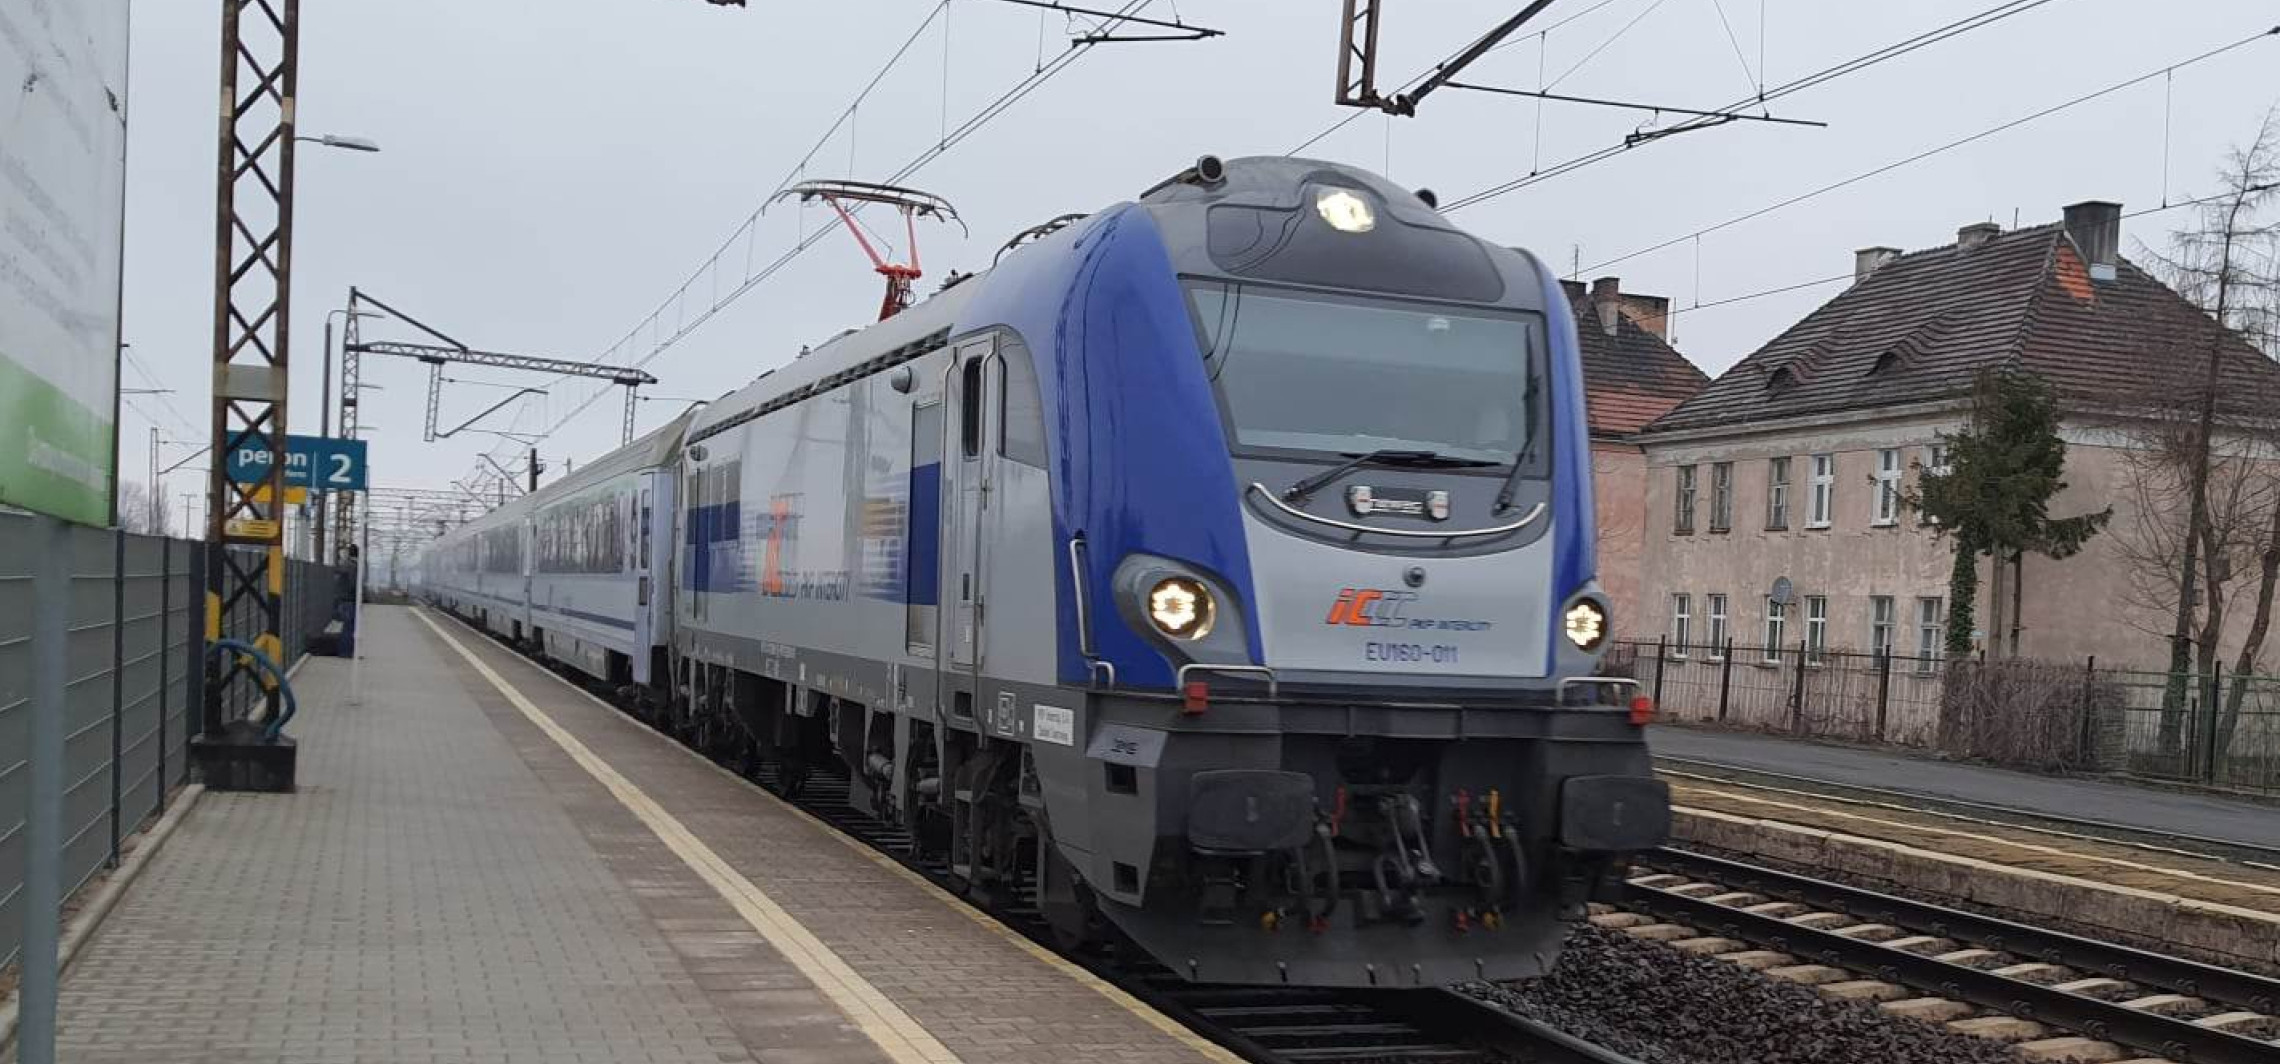 Inowrocław - Będzie więcej pociągów z Inowrocławia do Warszawy? Jest odpowiedź PKP